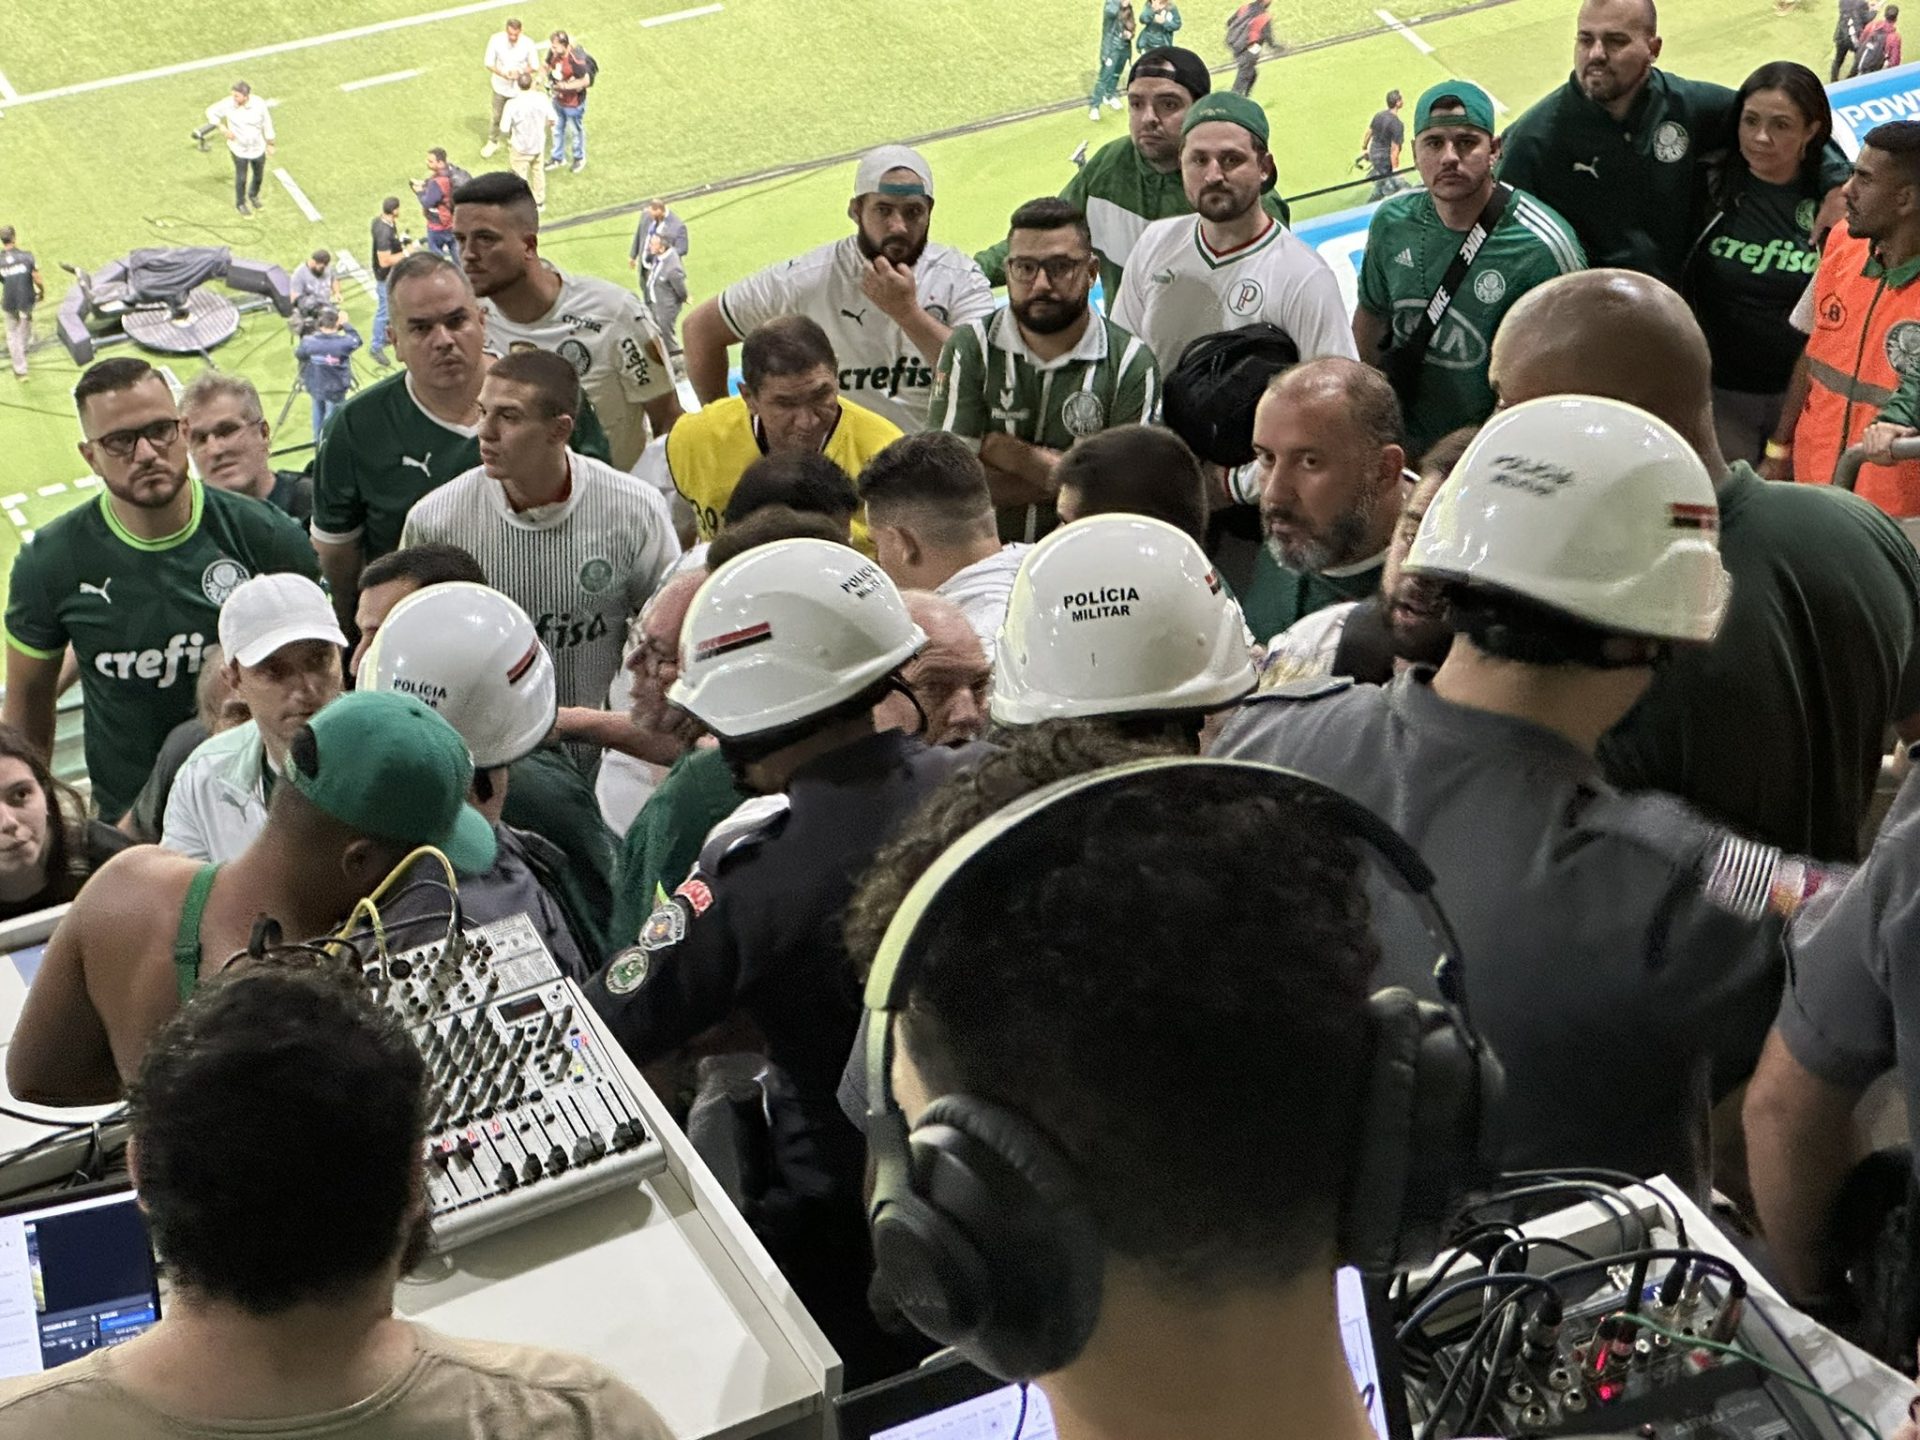 Jornalistas argentinos são acusados de racismo no estádio Allianz Parque, no jogo entre Palmeiras e Boca Juniors - Foto: Reprodução/ X @f_delaurentiis